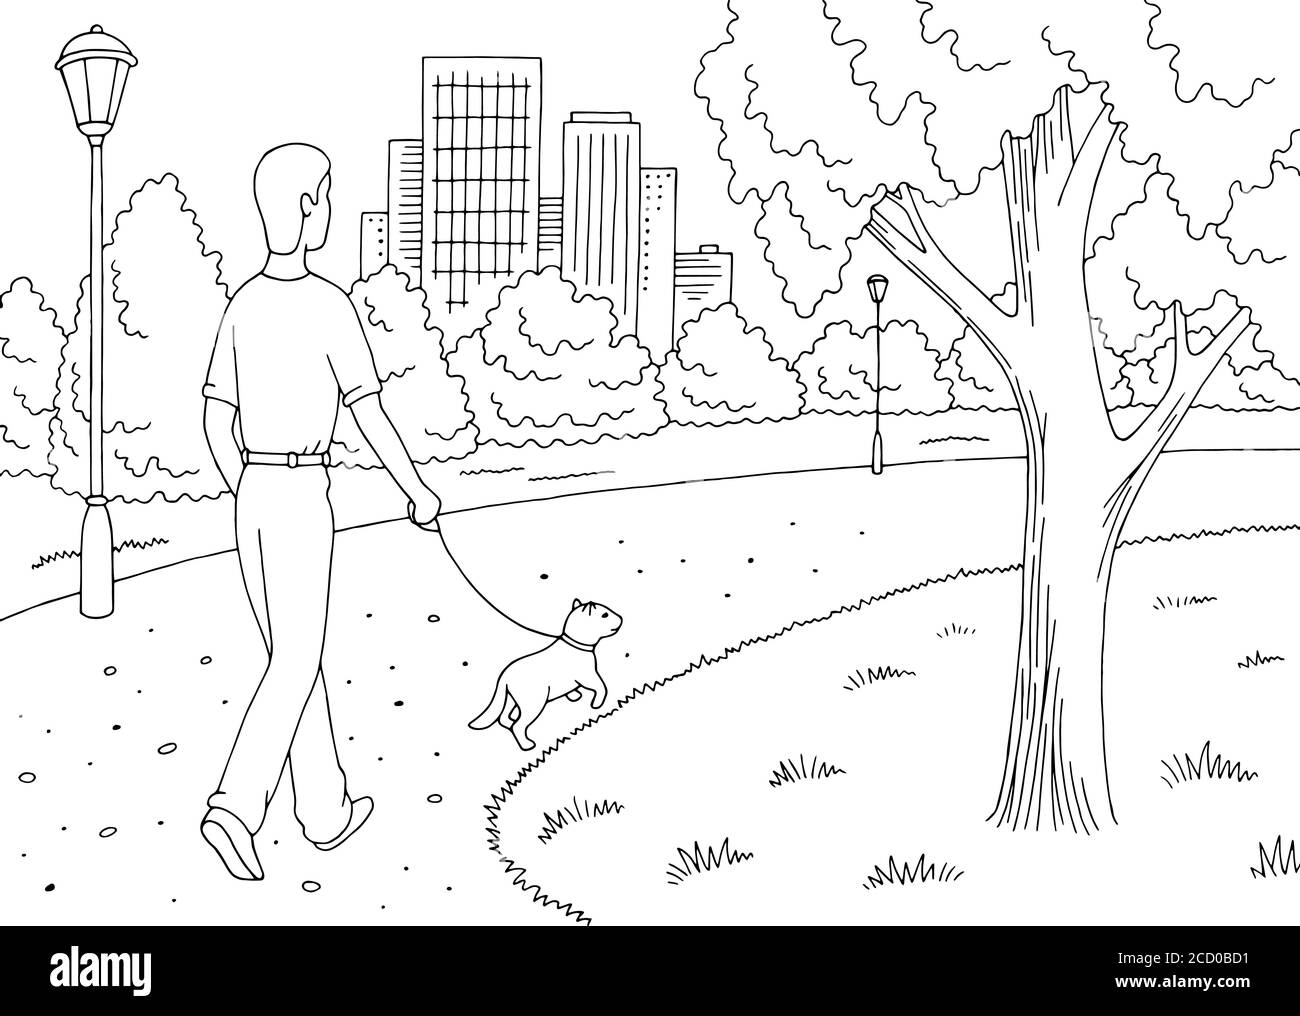 Park Graphic noir blanc paysage dessin vecteur d'illustration. L'homme marche avec un chien Illustration de Vecteur